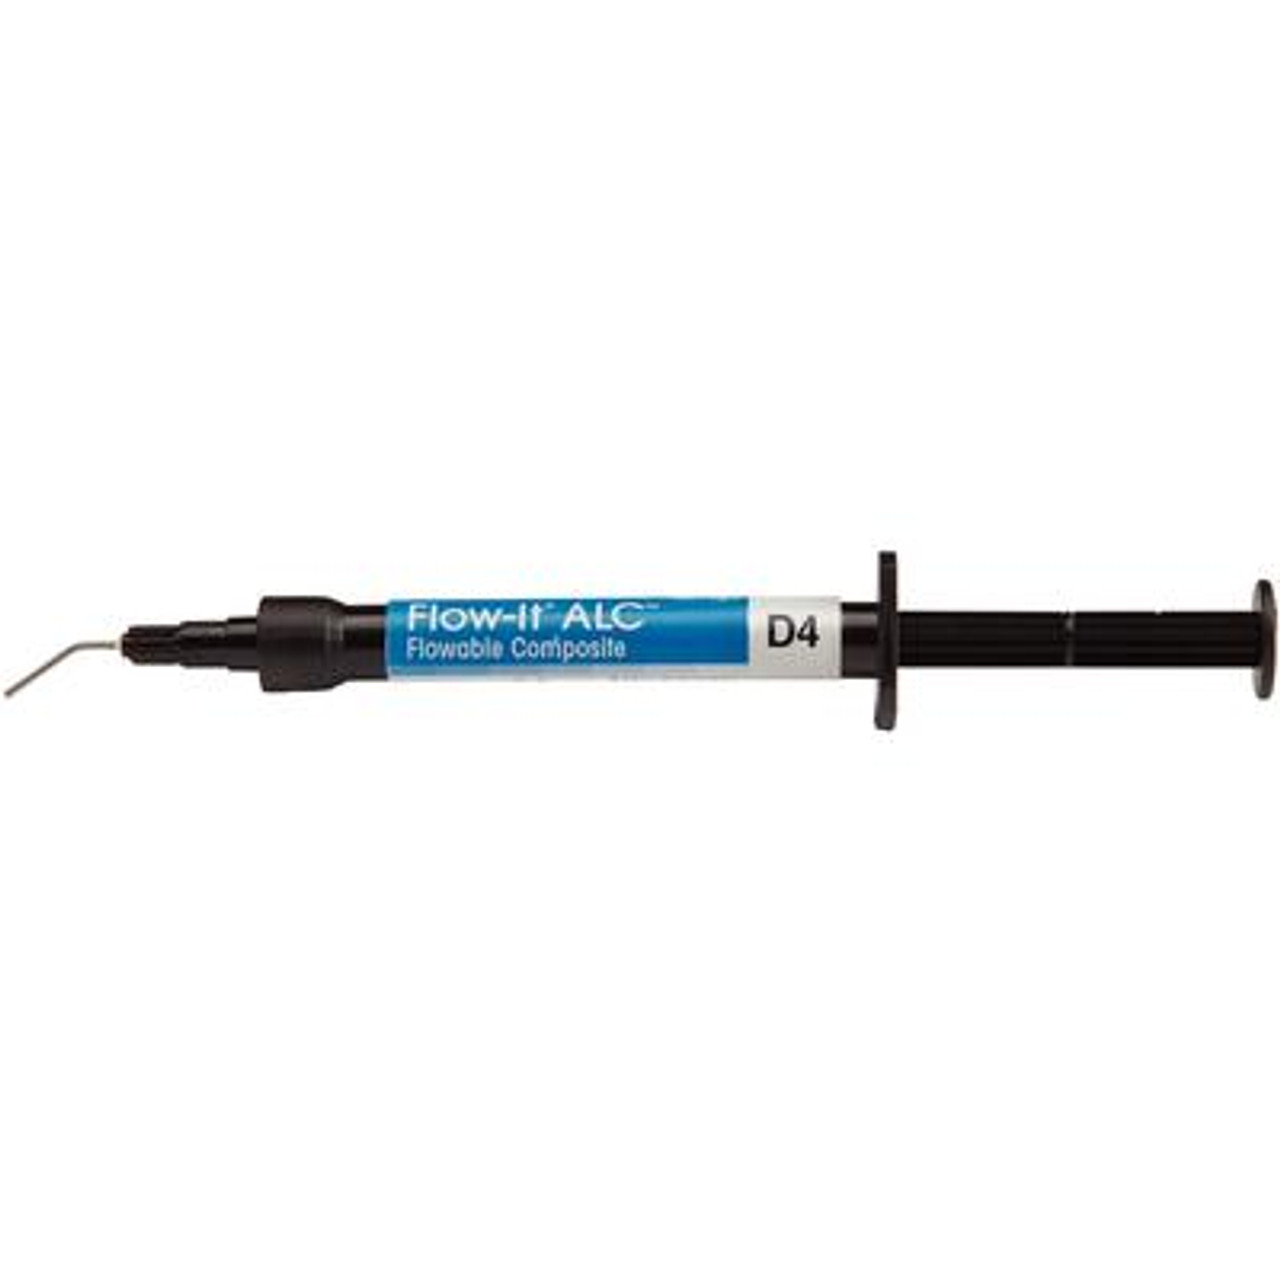 Pentron Flow-It ALC Flowable Composite D4 Syringe 4g & Tips